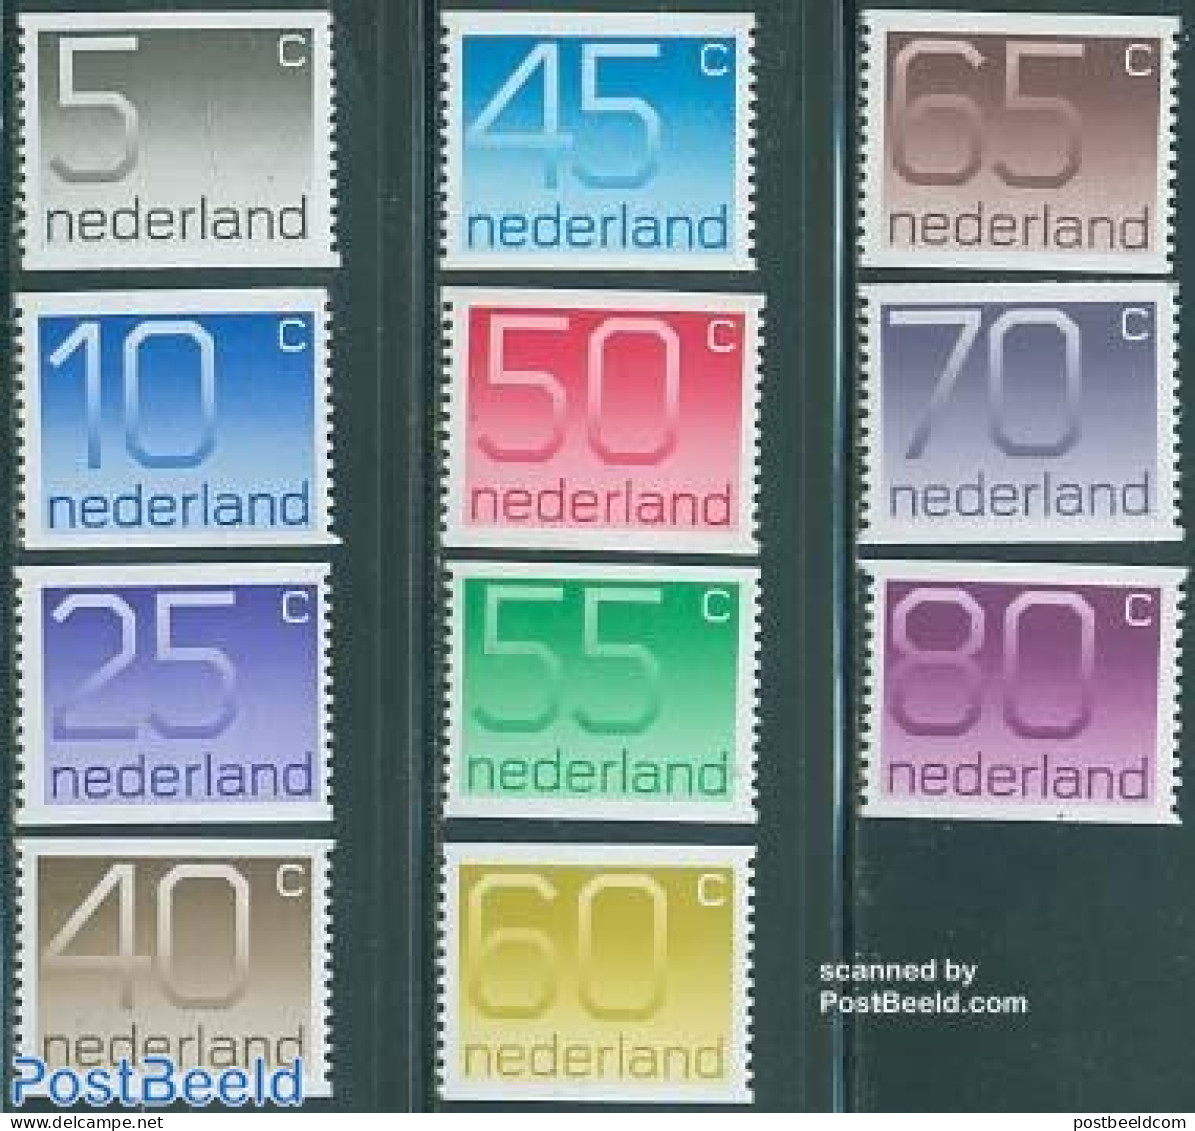 Netherlands 1976 Definitives, Coil Stamps 11v, Mint NH - Unused Stamps